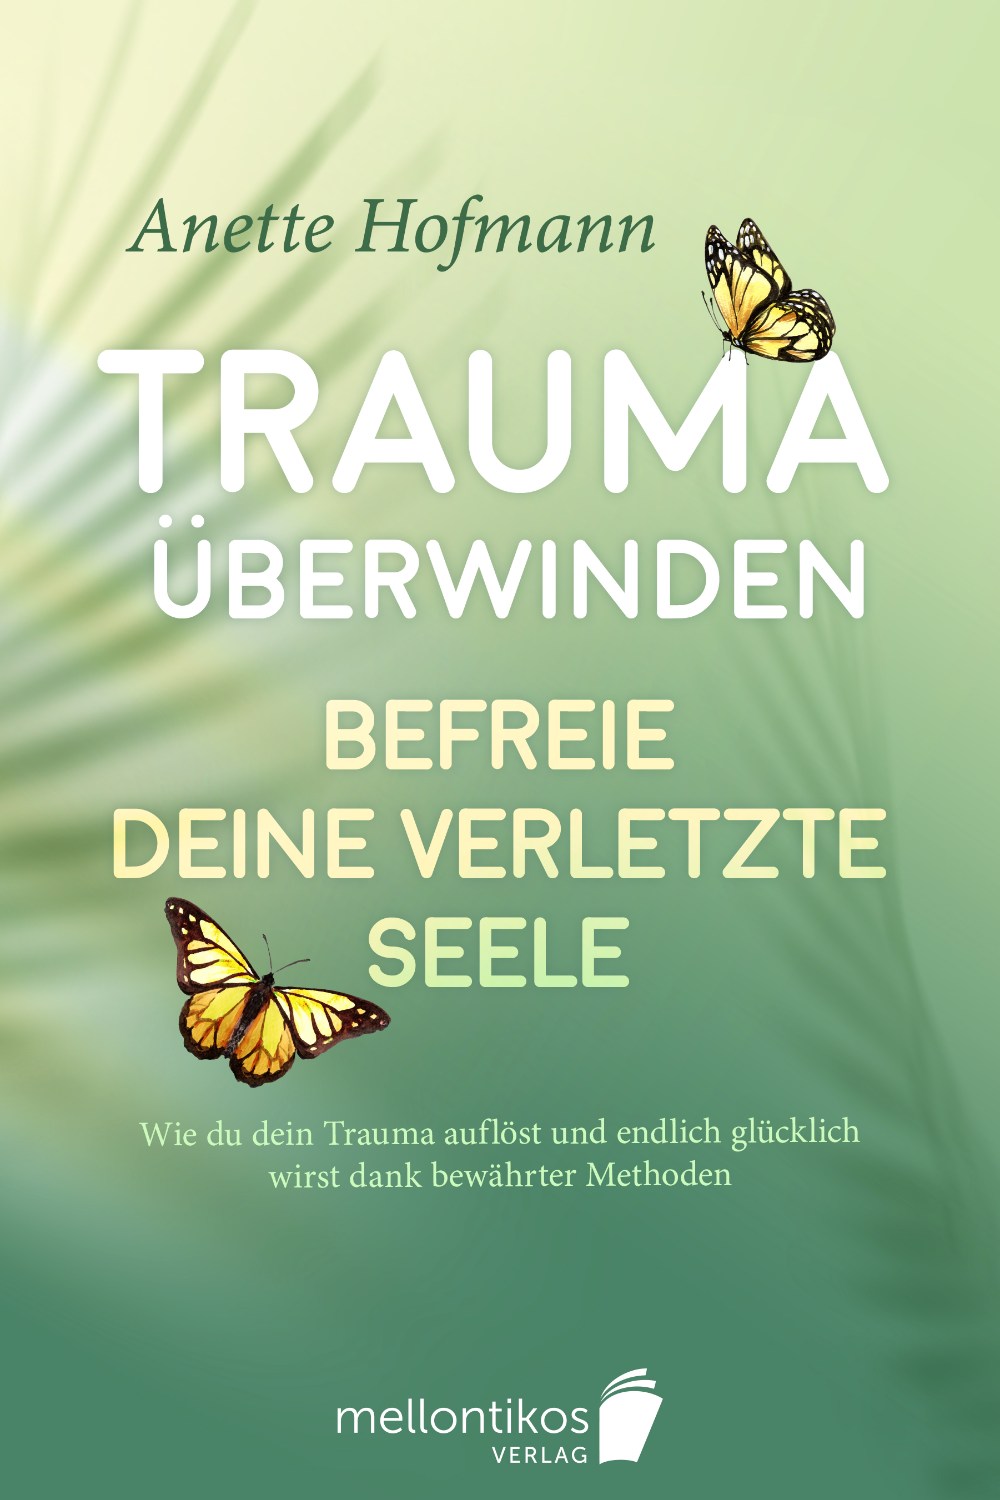 Buchcover Design Ratgeber Trauma überwinden Befreie deine verletzte Seele von Anette Hofmann aus Mellontikos Verlag